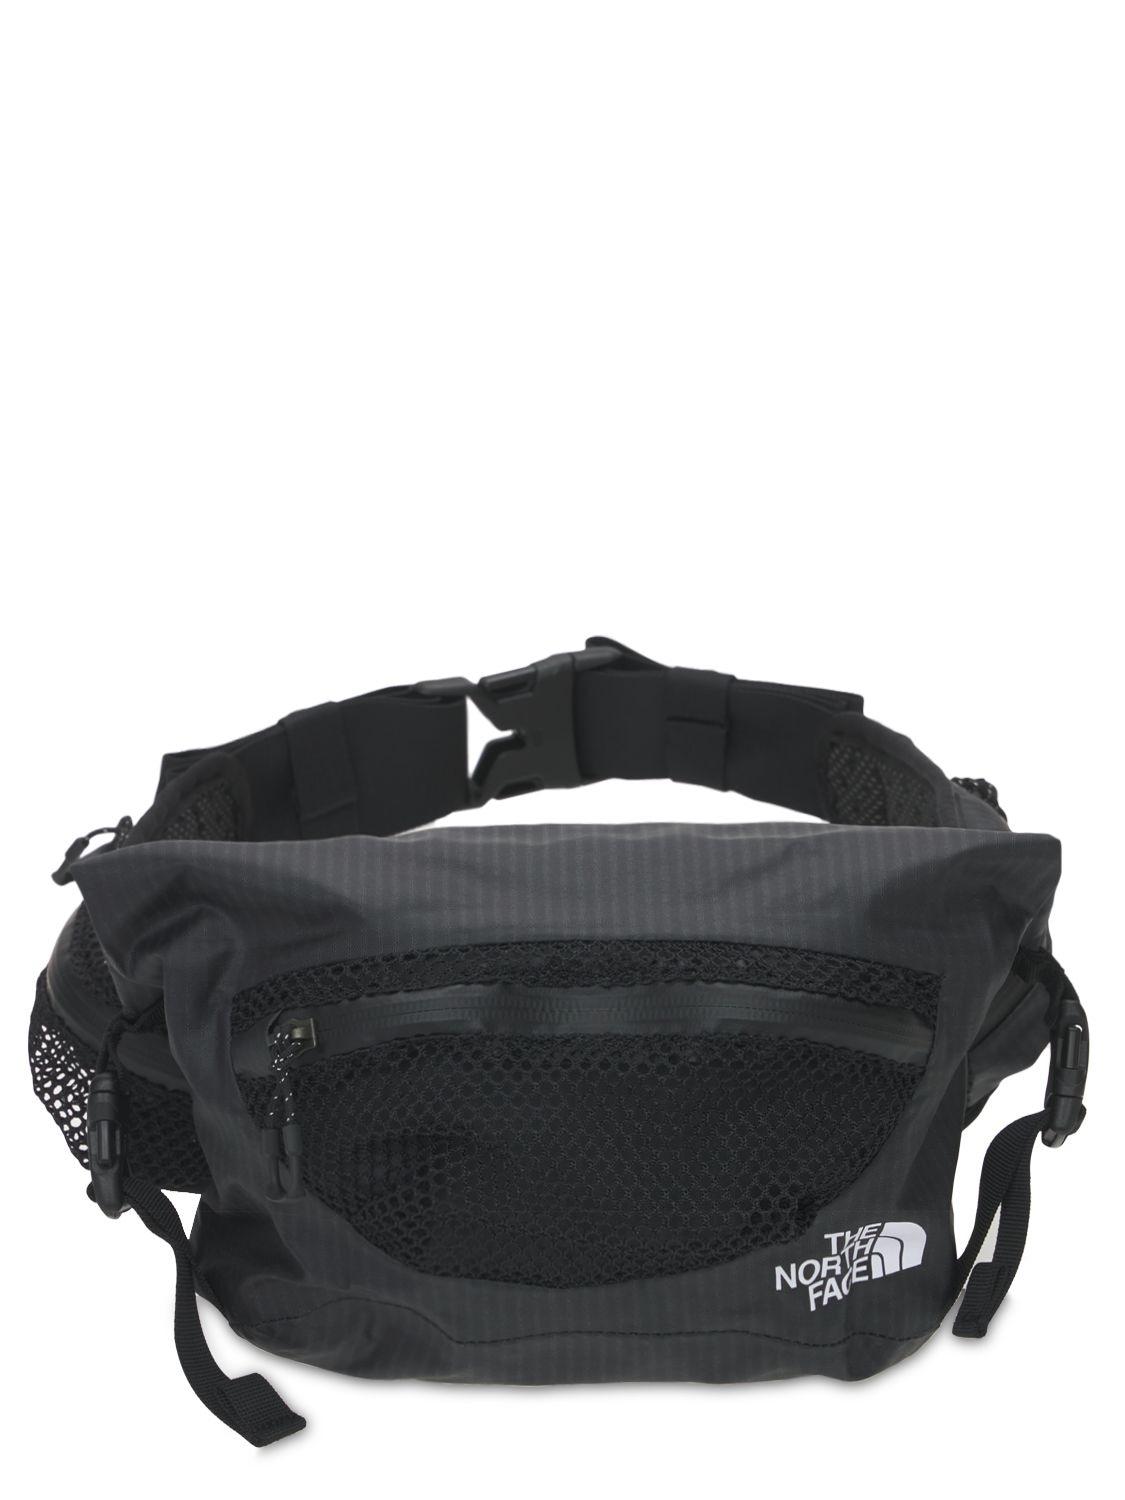 The North Face Waterproof Lumbar Belt Bag in Black for Men - Lyst